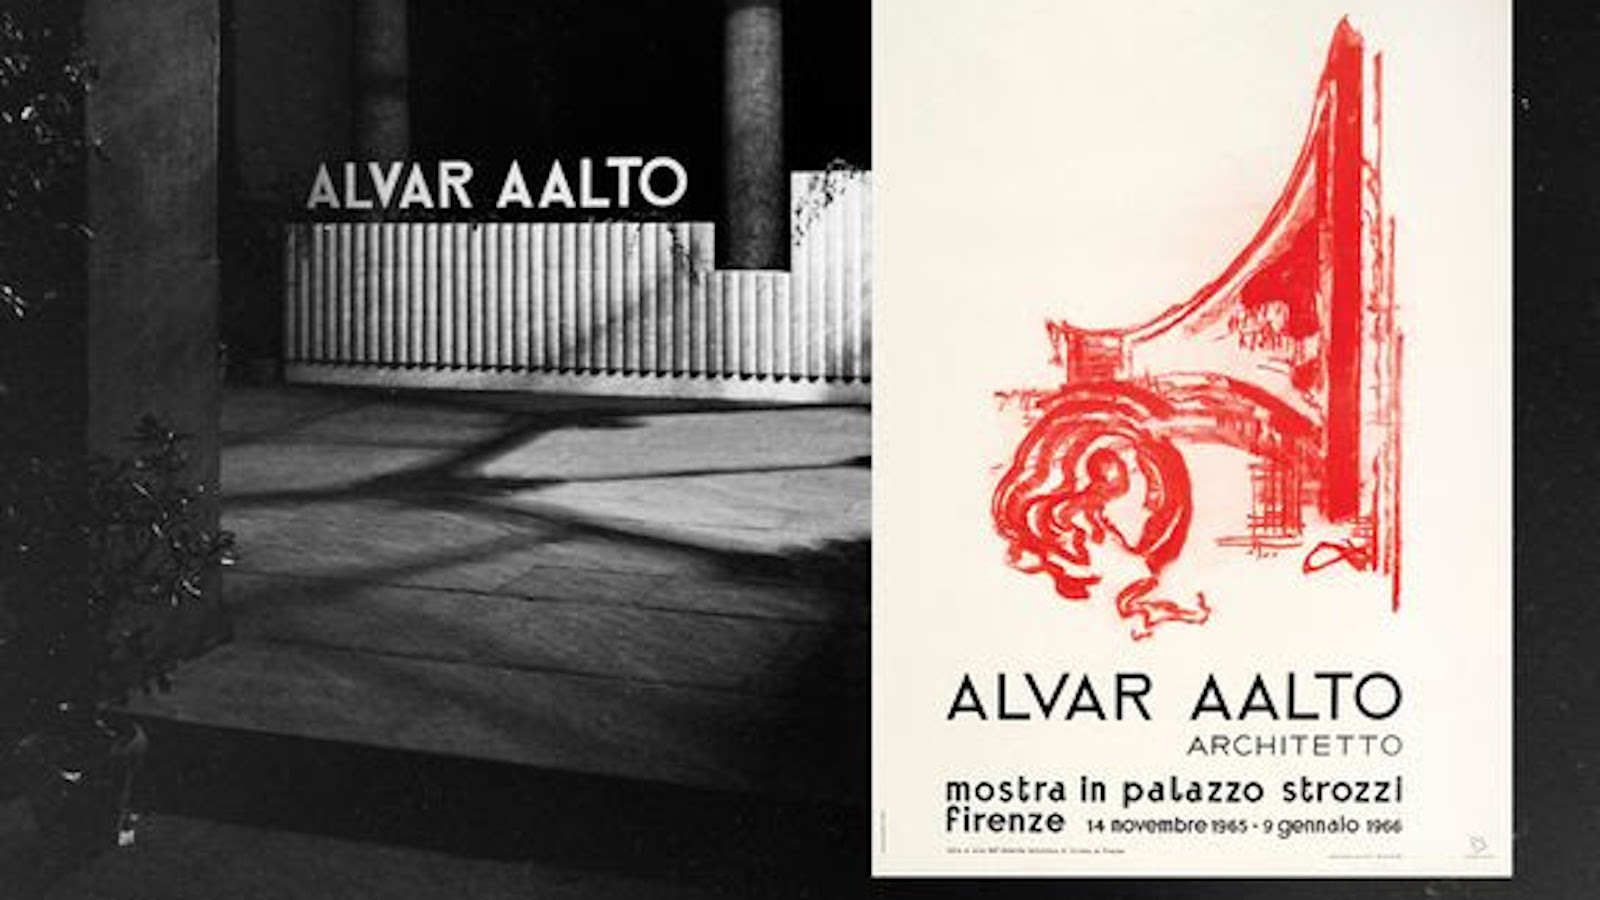 Kuvassa on musta-valkoisena Alvar Aallon nimi museon seinässä Firenzessä ja kuvan päällä on Aallon retrospektiivisen näyttelyn juliste.  Kuvassa on vaalealla pohjalla punainen kuvio.